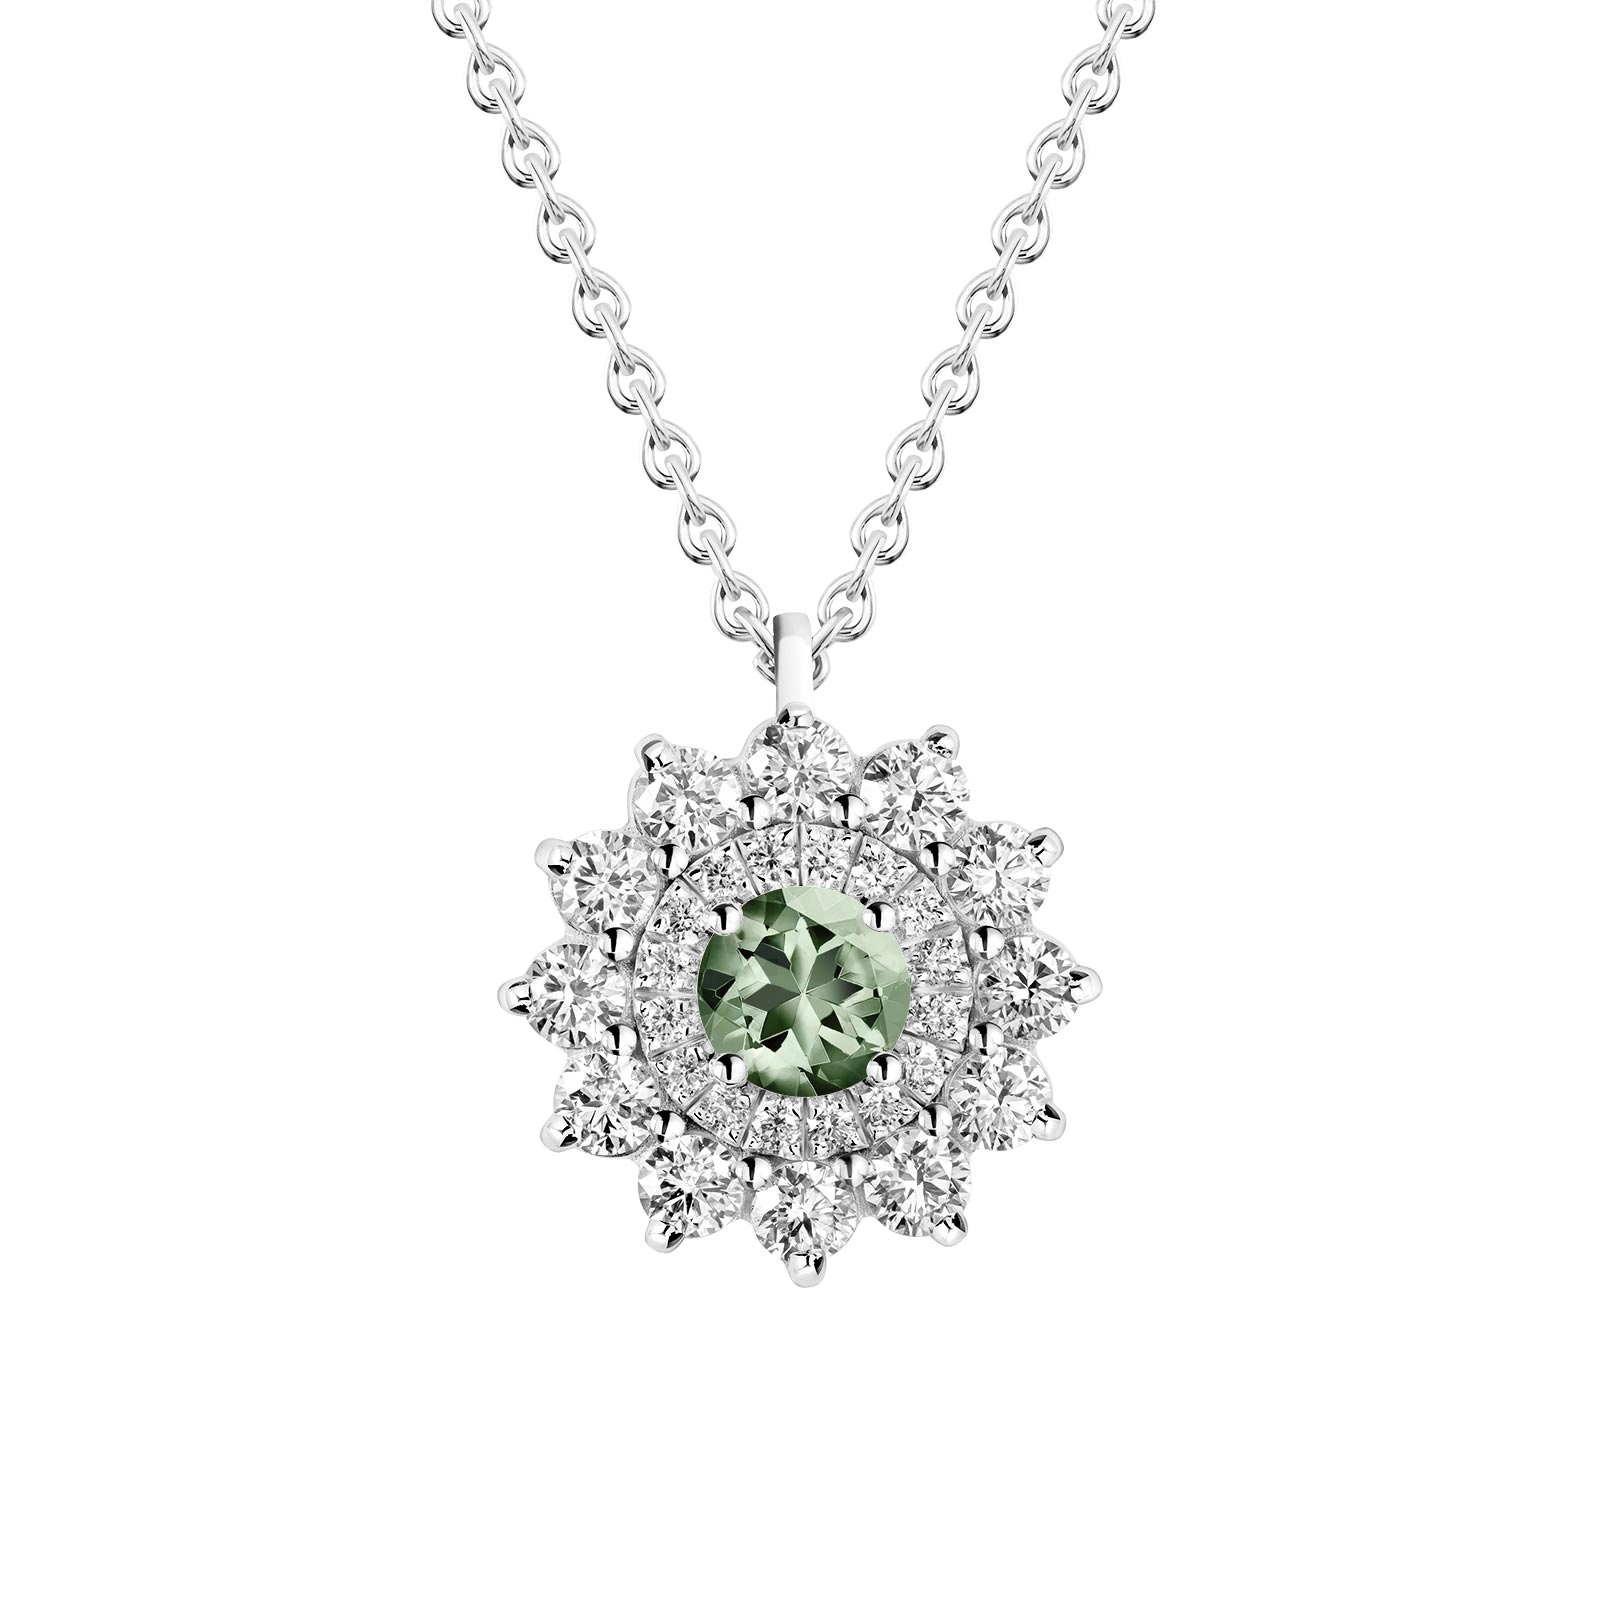 Pendentif Or blanc Saphir Vert et diamants Lefkos 1